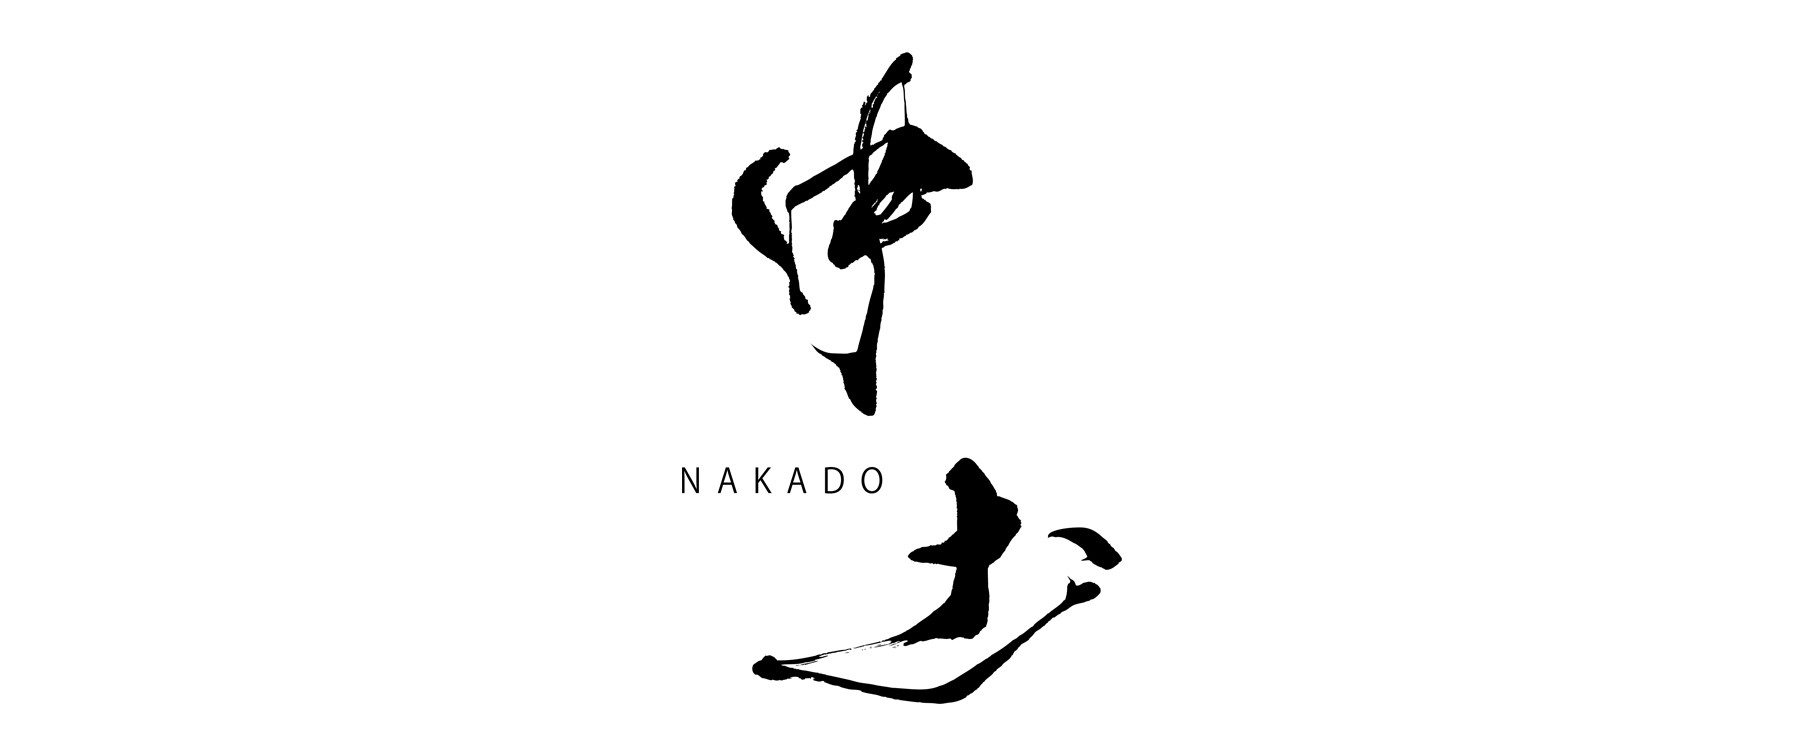 NAKADO's images1